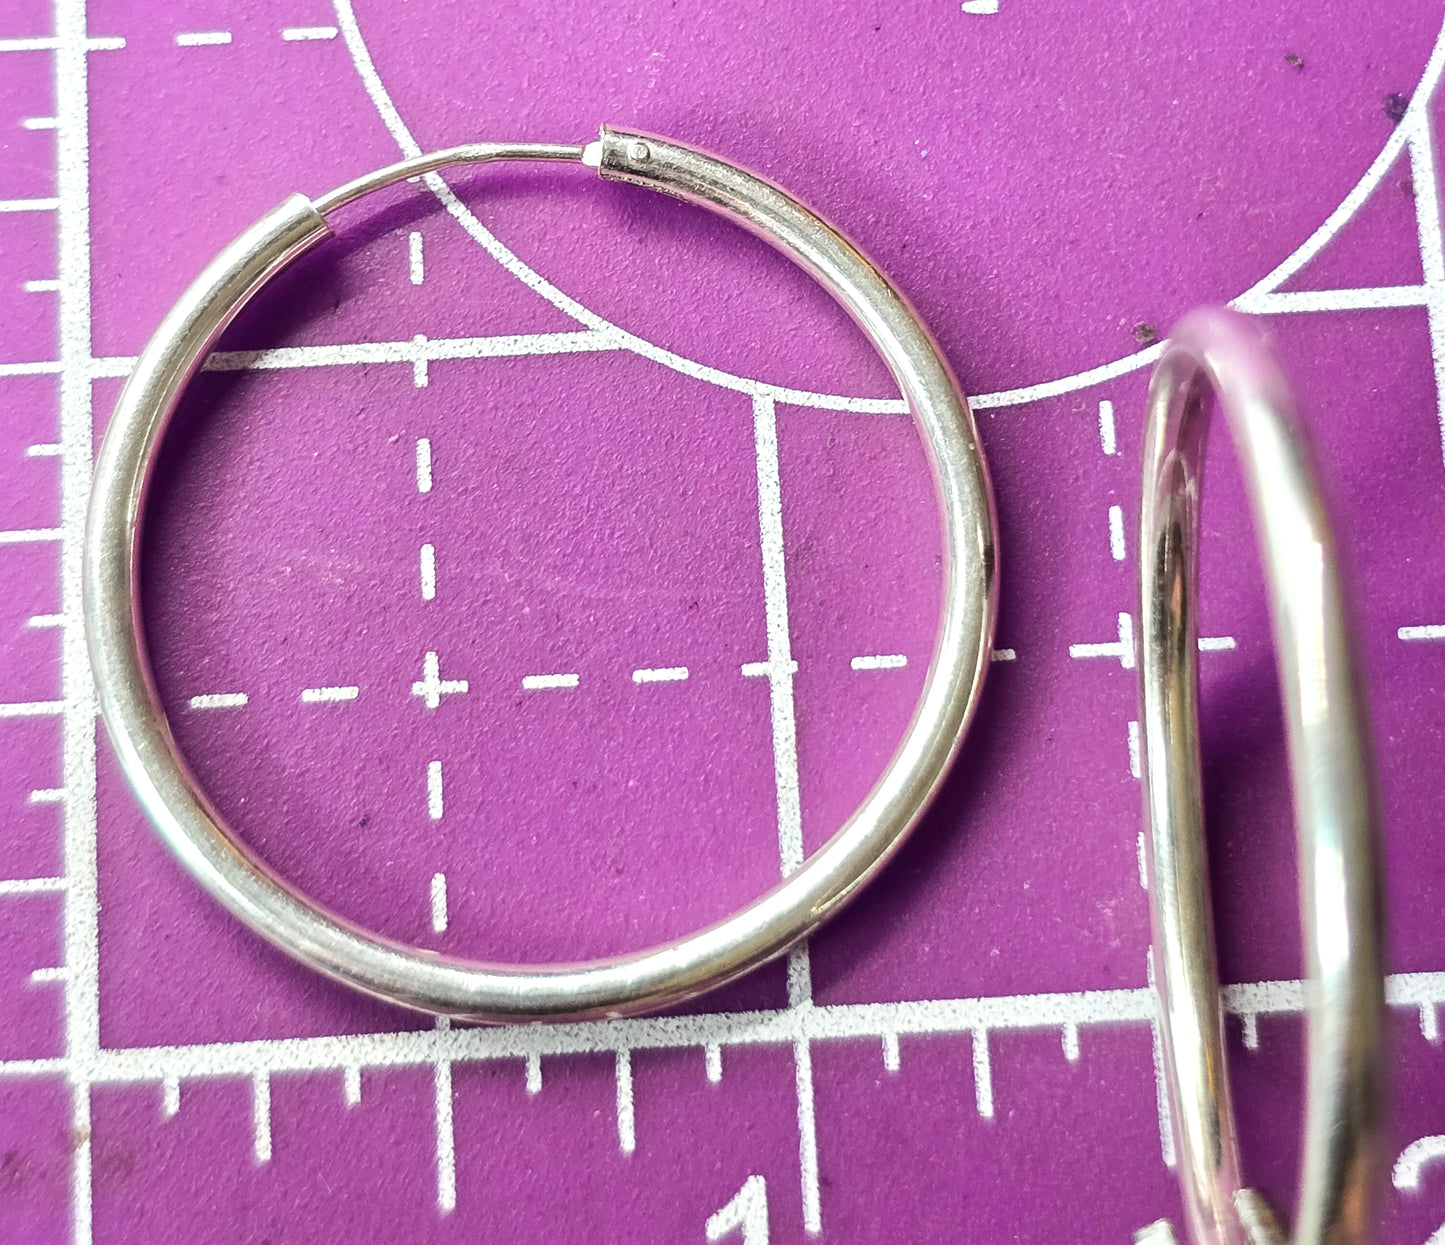 Thin silver hoops internal threaded vintage retro hoop earrings